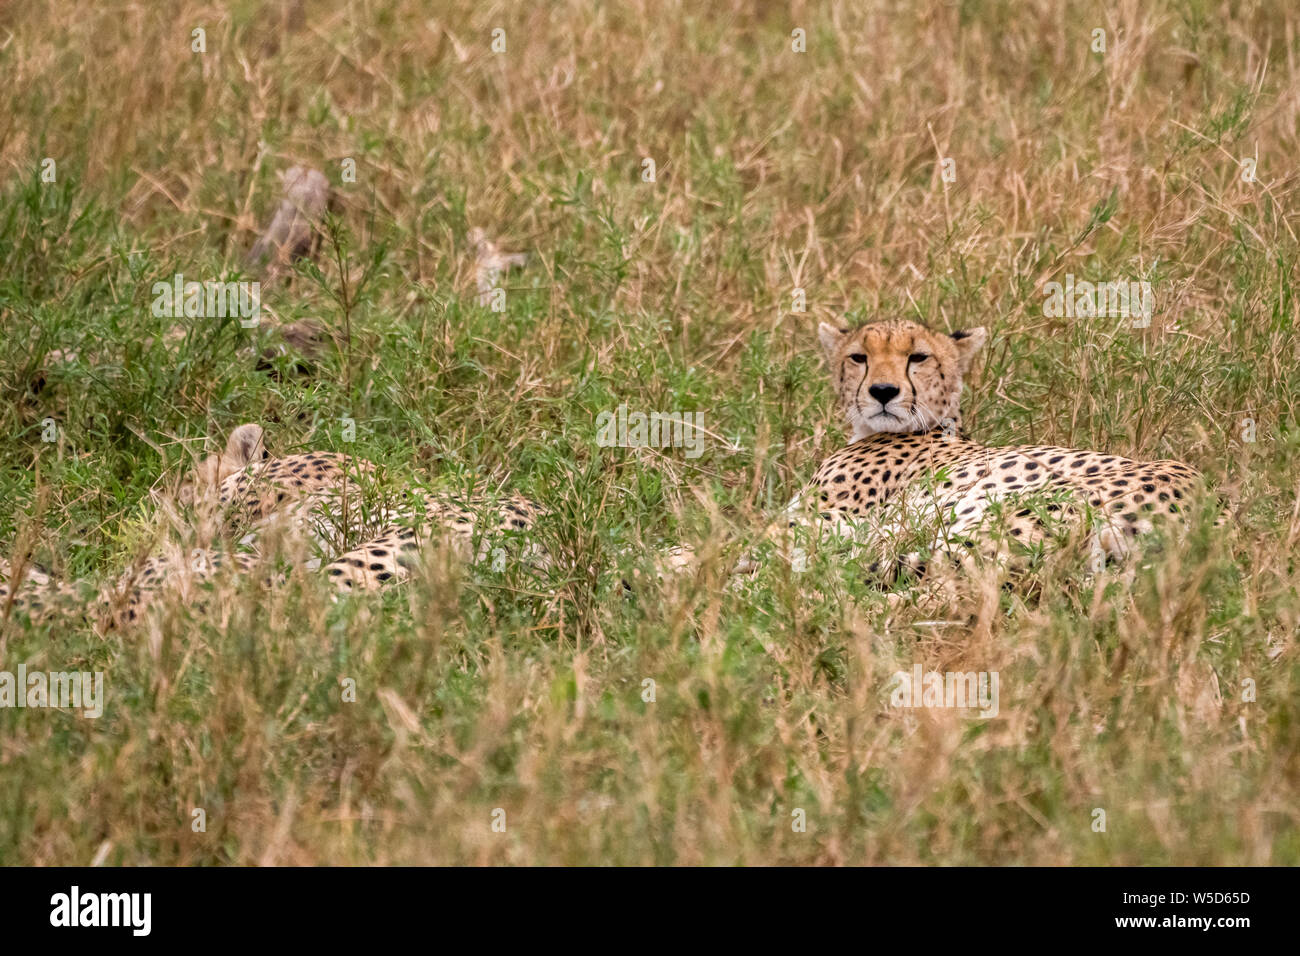 Cheetahs resting and panting in the grass. Photographed at Serengeti National Park, Tanzania Stock Photo